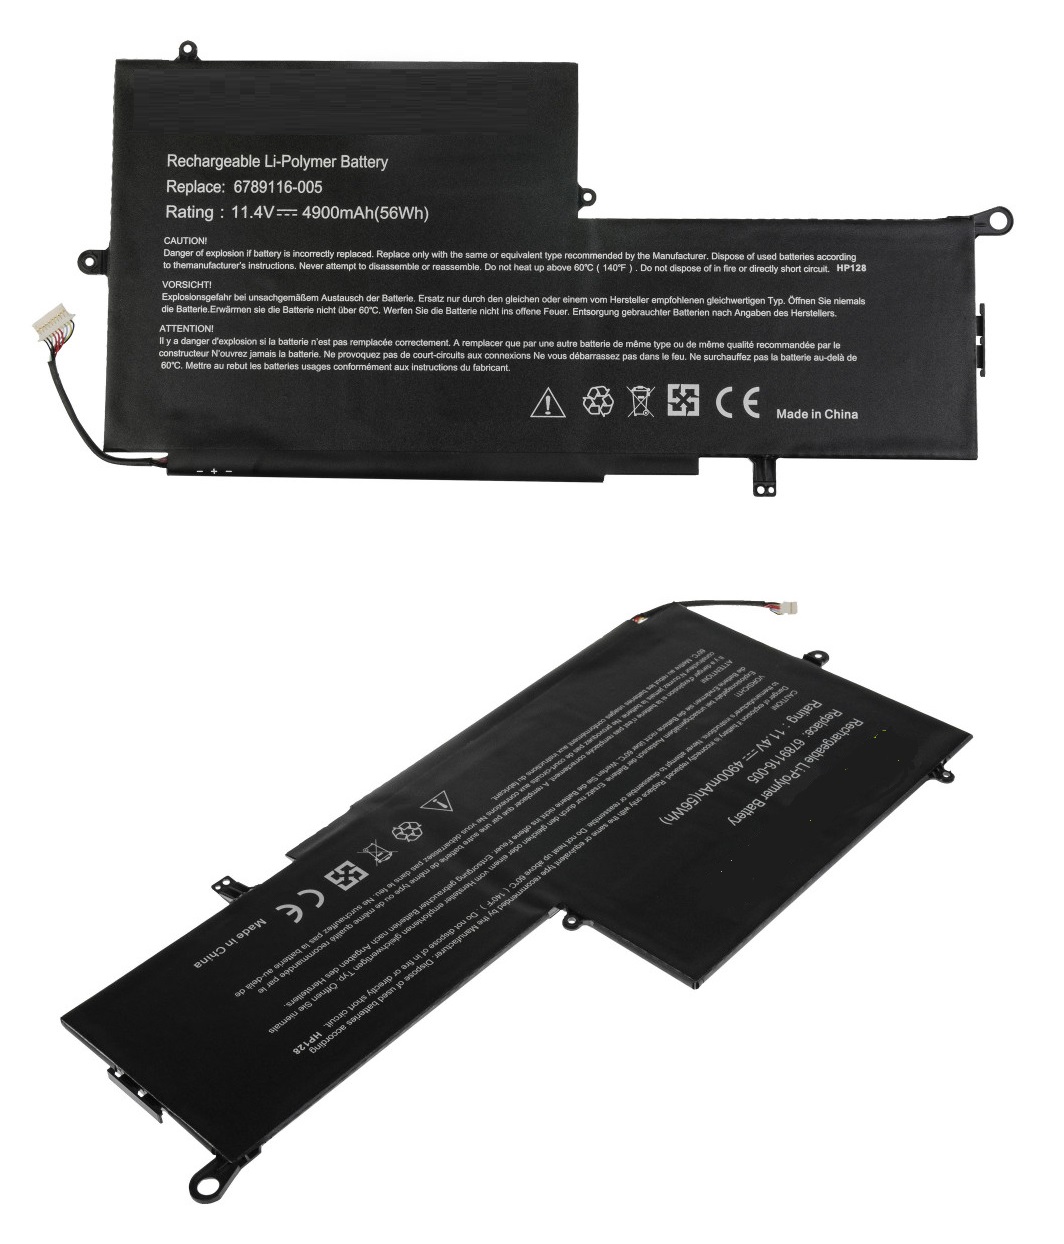 HP Spectre x360 13-002nf M0B28ea Laptop Battery